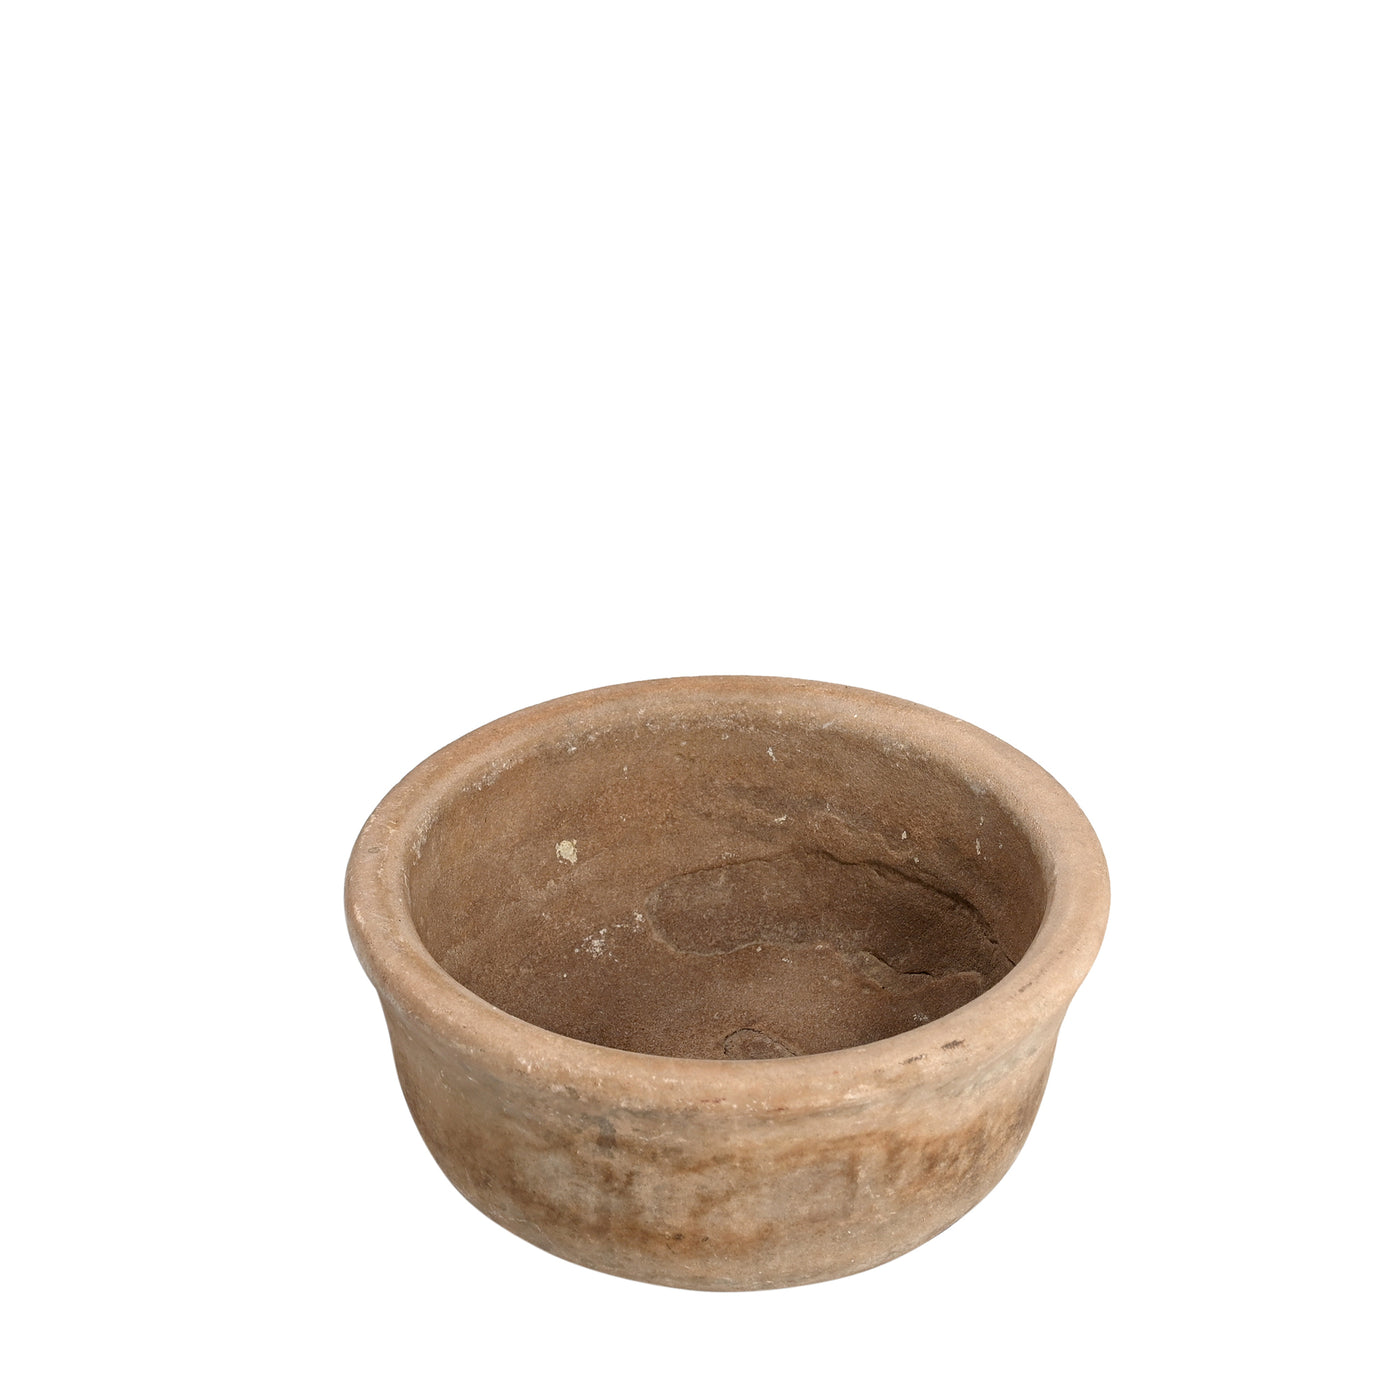 Devliya - Stone bowl n ° 2